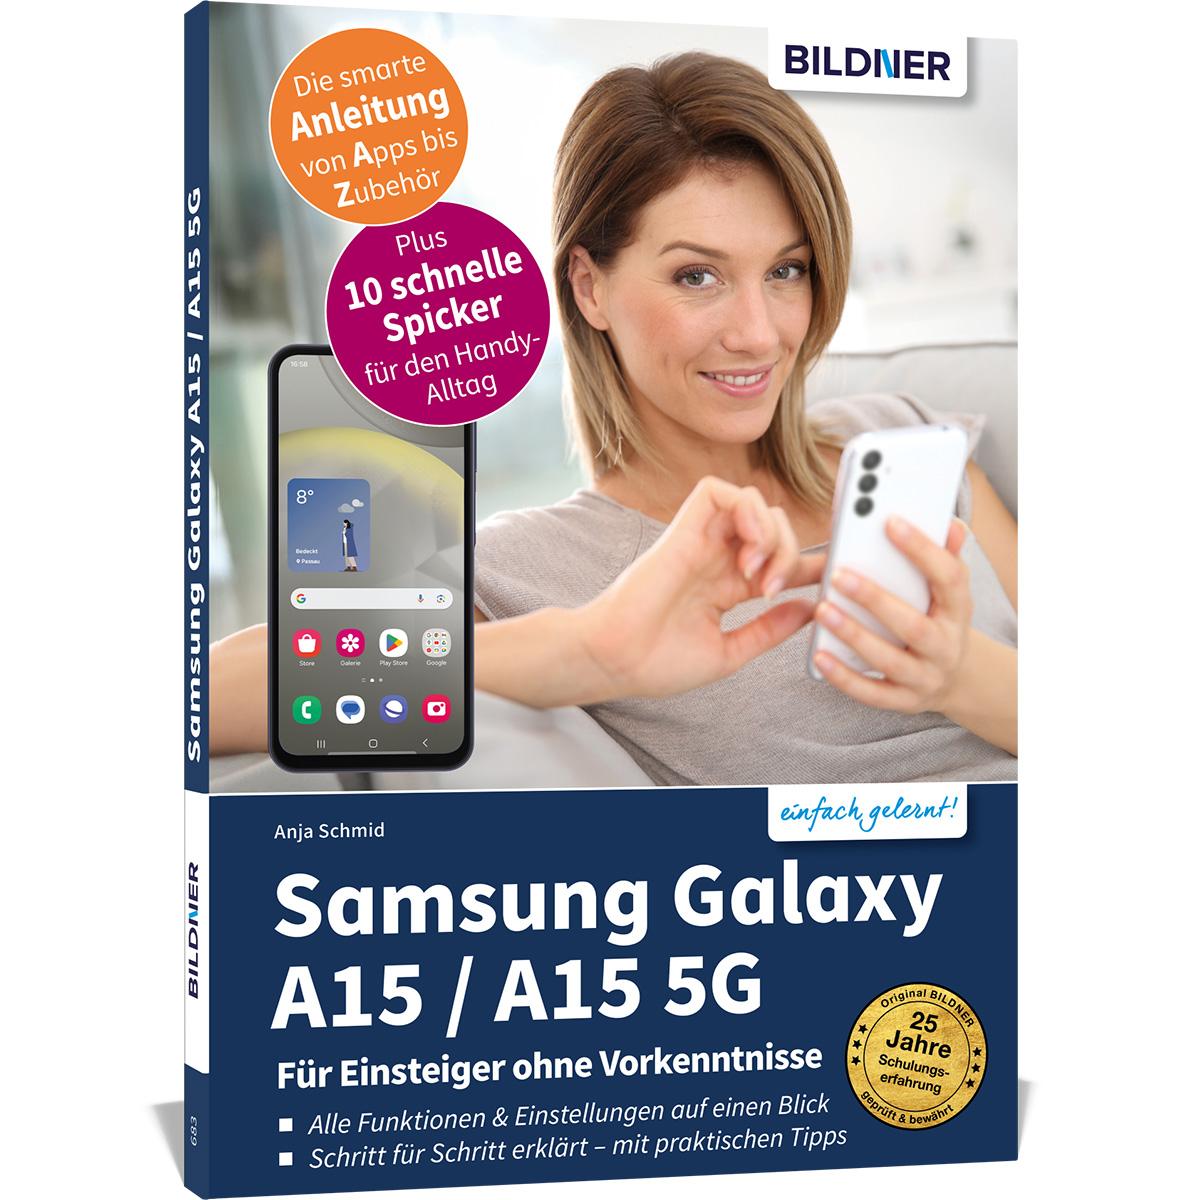 Carte Samsung Galaxy A15 - Für Einsteiger ohne Vorkenntnisse 